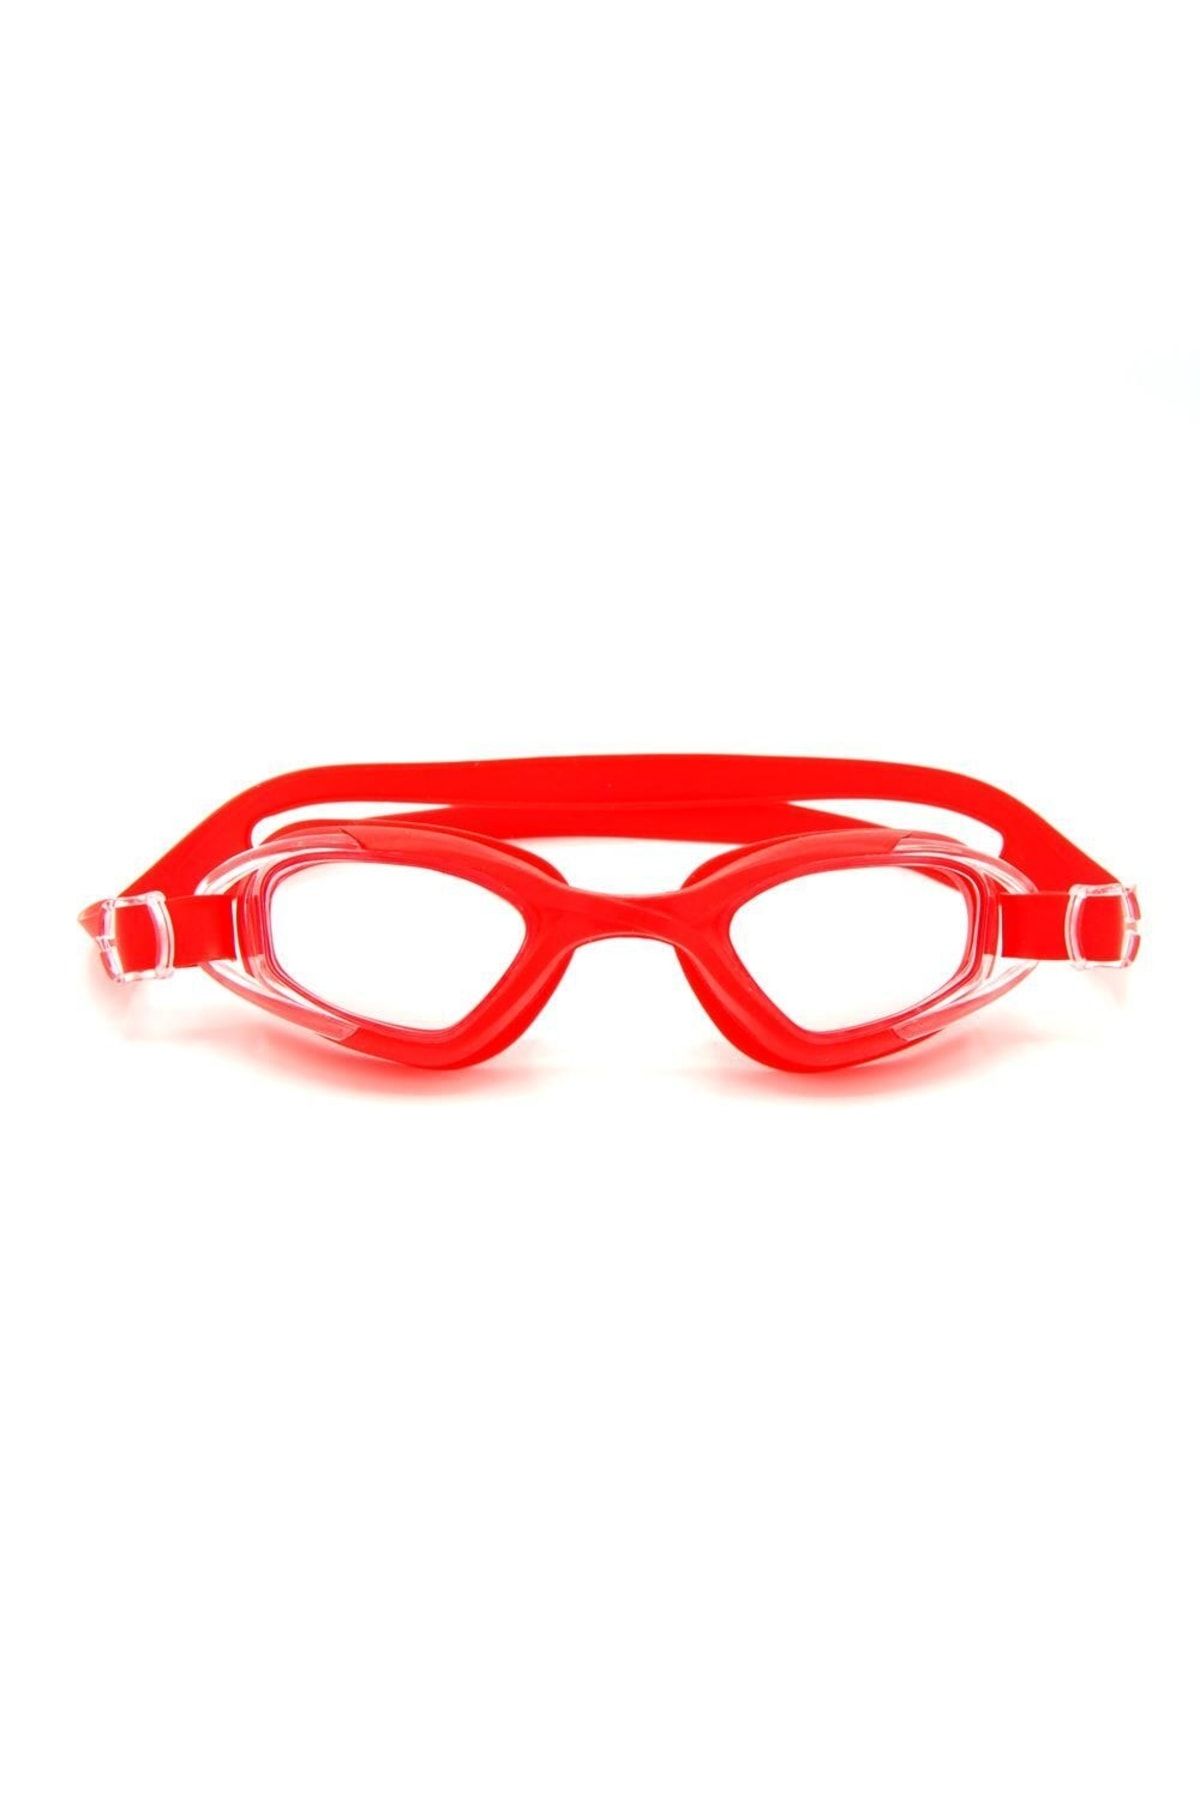 Delta (LÜKS KUTULU) Gs3 Silikon Havuz Deniz Yüzücü Gözlüğü Yetişkin Yüzücü Gözlük Kırmızı